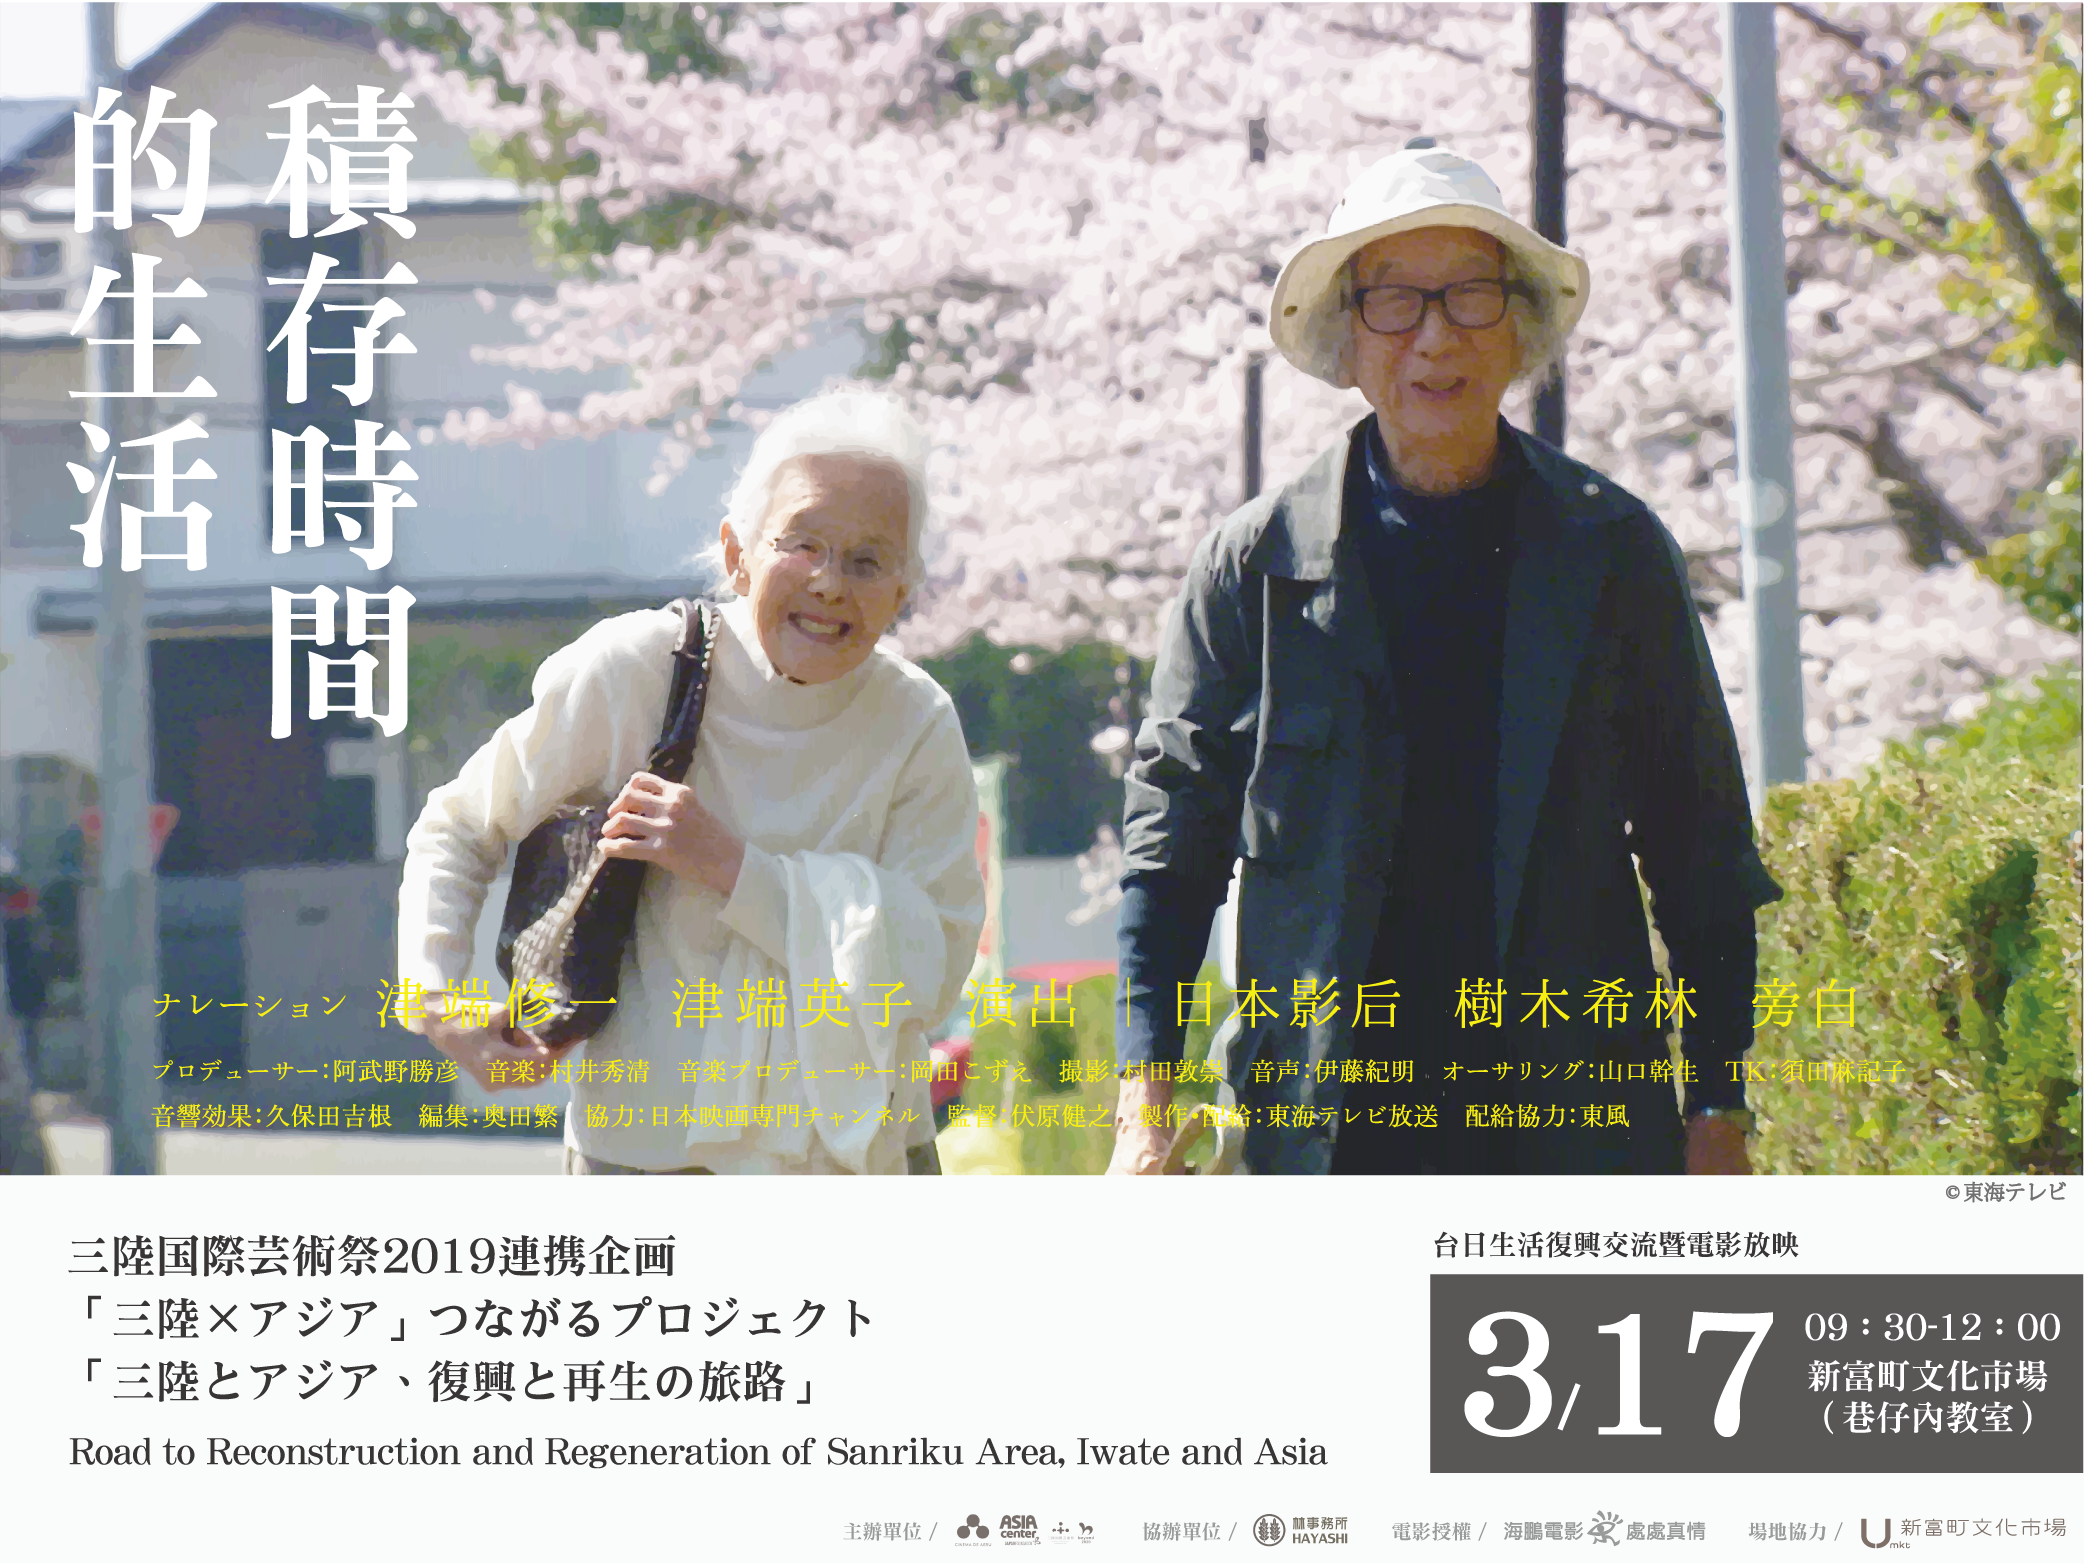 [小間工作室活動] 日本東北跨國影展：「三陸地區、岩手與亞洲，復興與再生之路。」